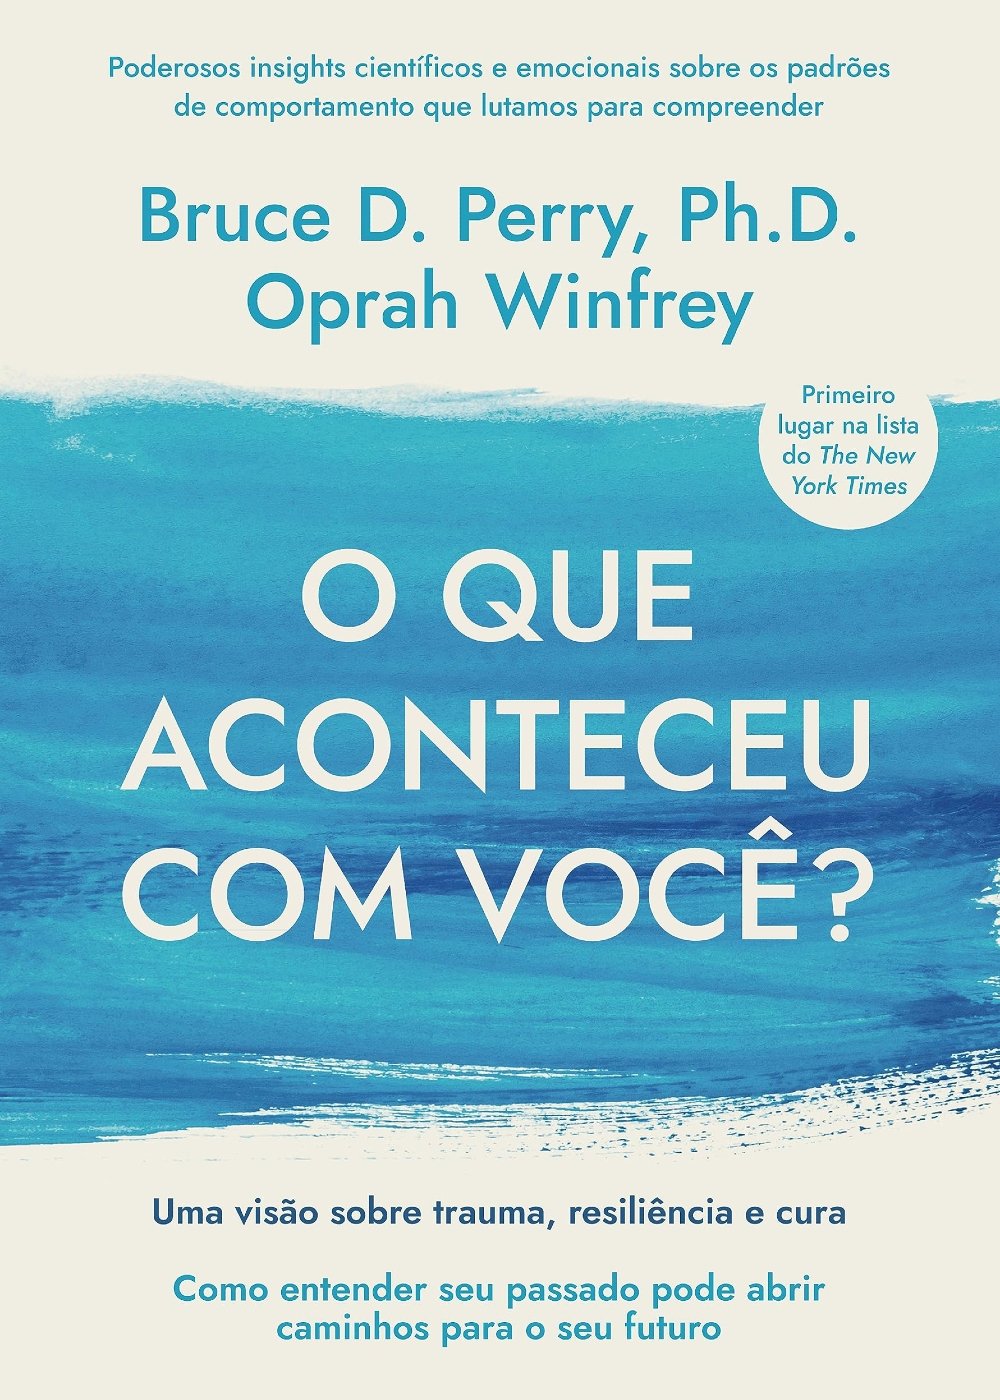 Oprah Winfrey - O que aconteceu com você? - livro - livros de famosos - leitura - divulgação - https://stealthelook.com.br